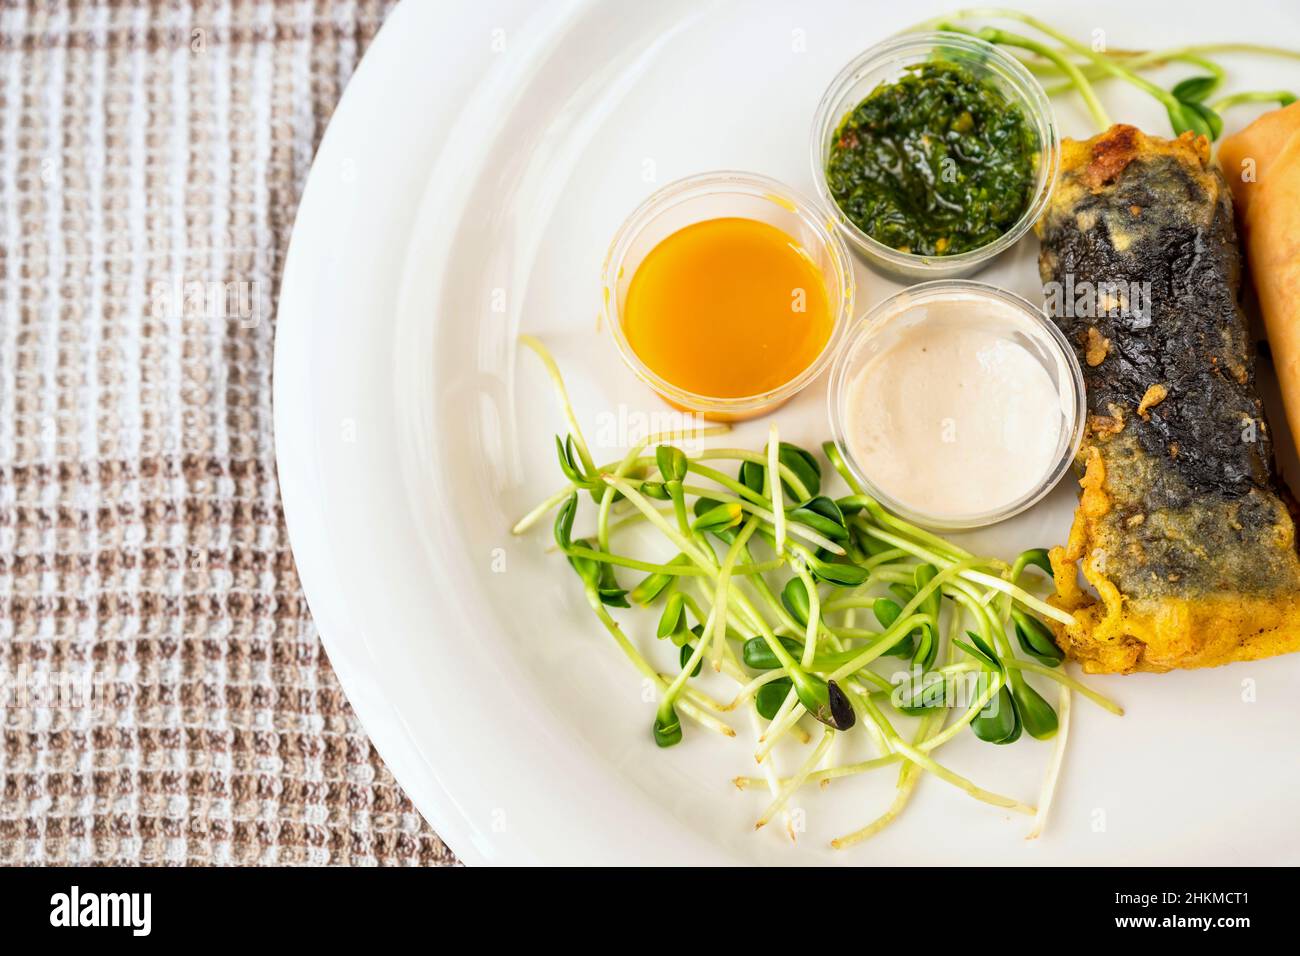 Piatto con verdure germogliate, 3 ciotola con salsa, rotolo vietnamita con alghe, closeup. Pasto vegetariano o vegano. Foto Stock